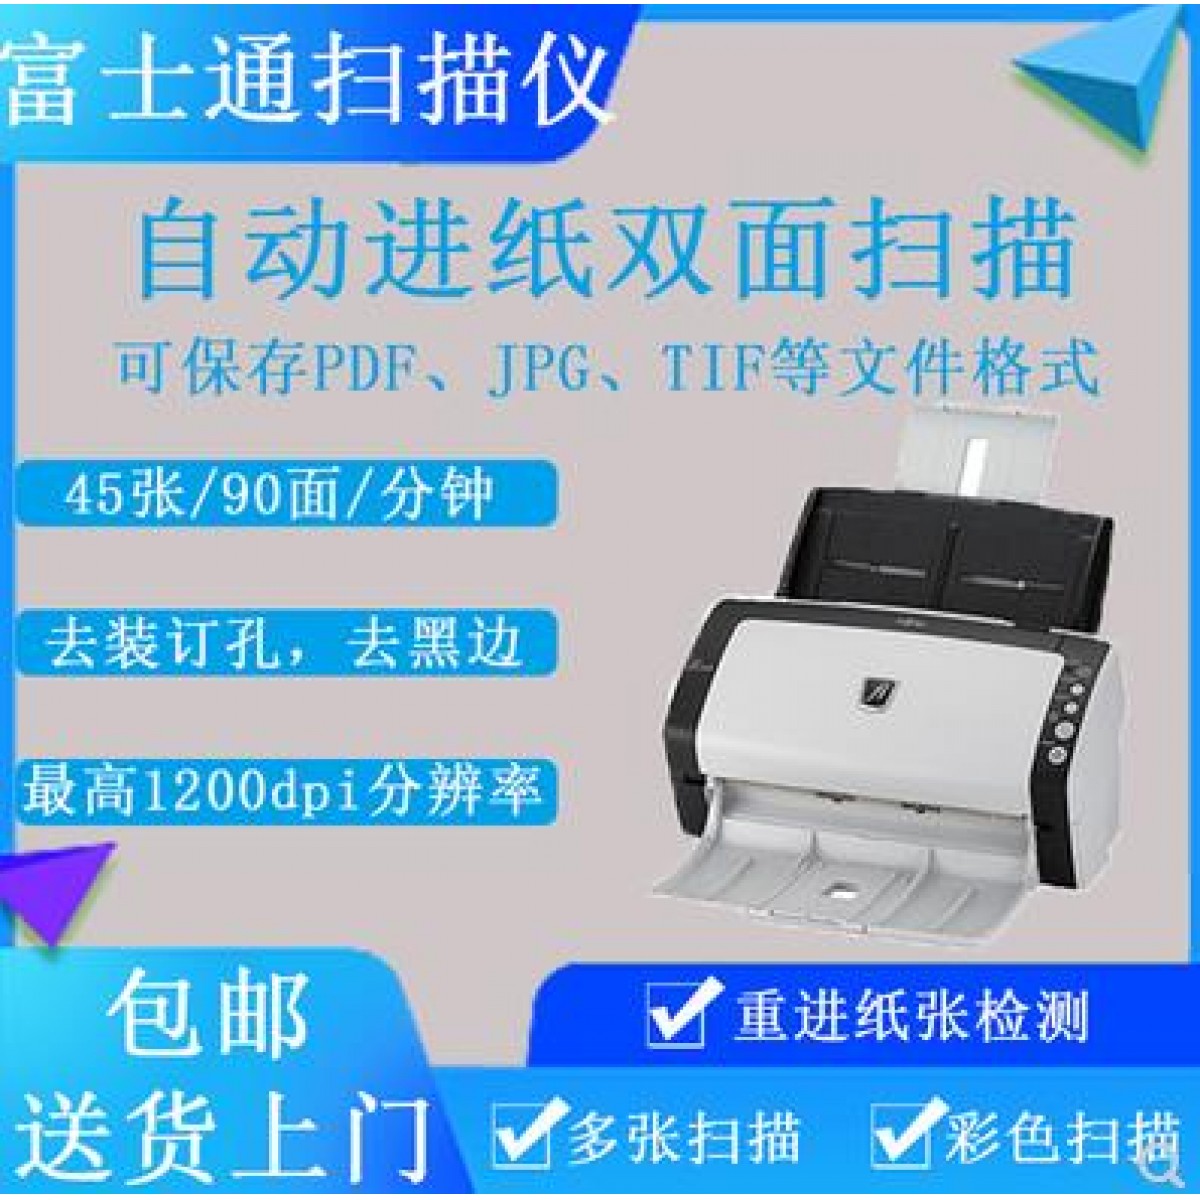 富士通fi6130小型扫描仪机高清专业办公快速连续自动进纸双面彩色